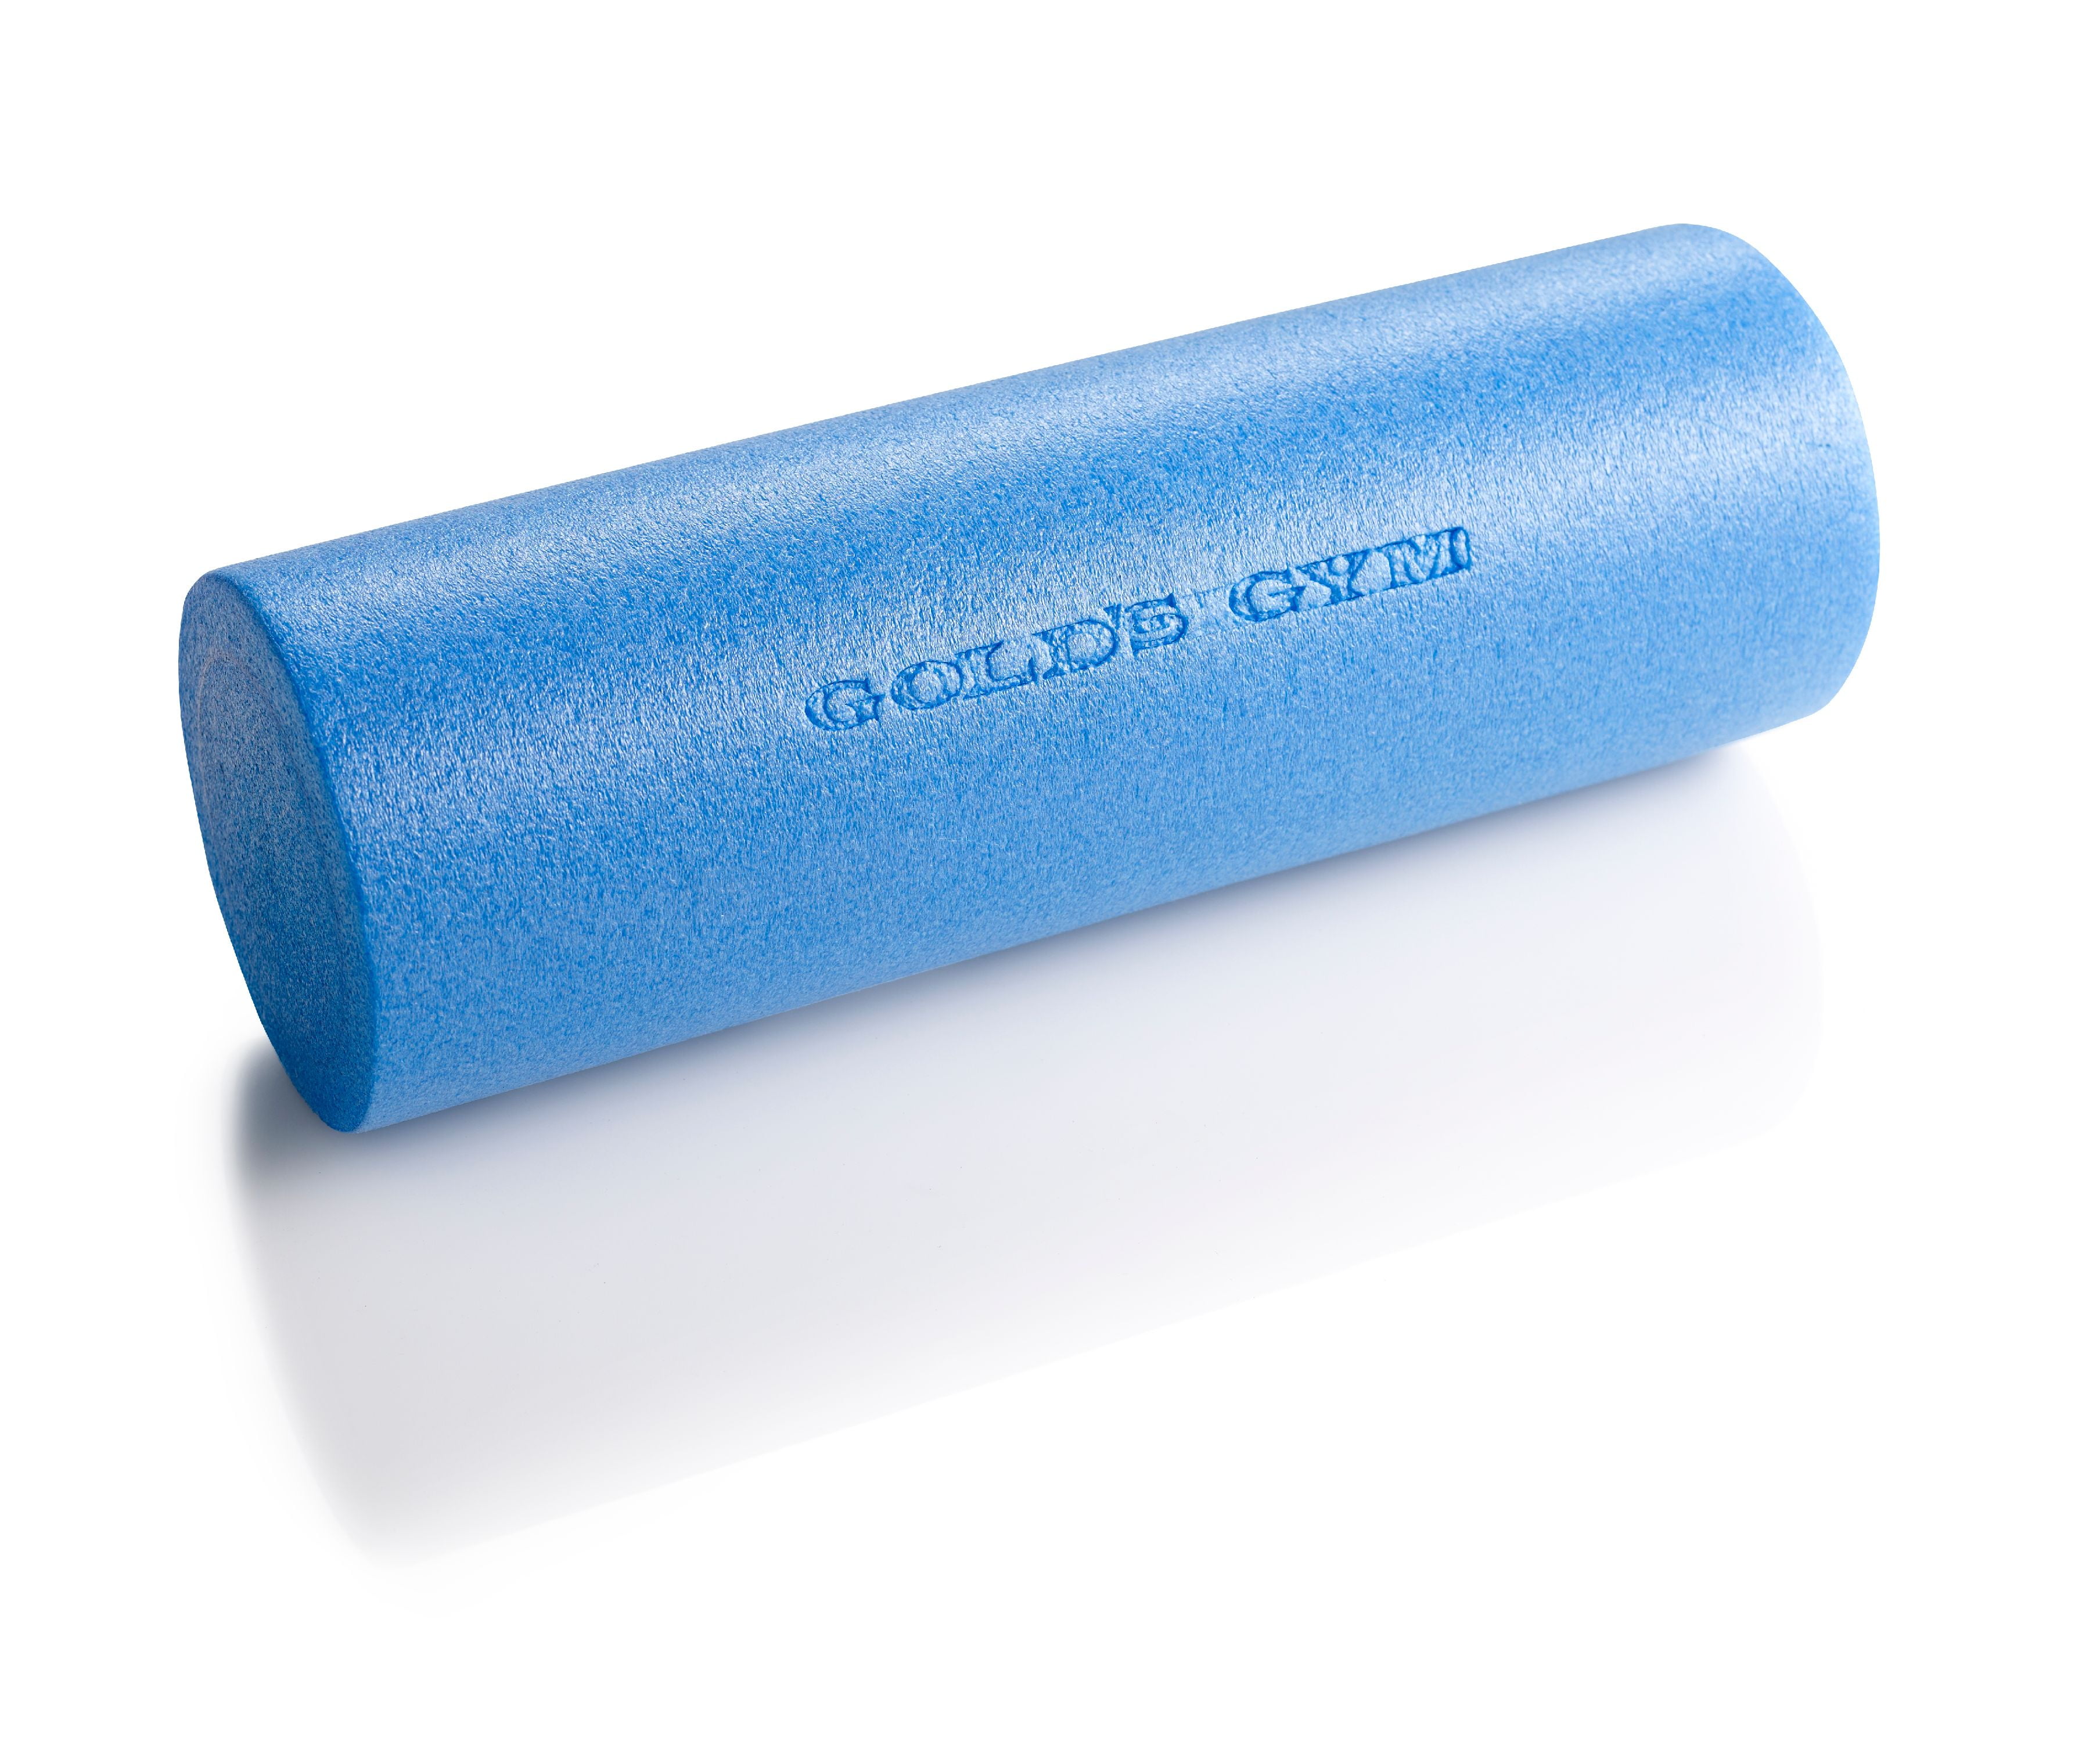 Gold's Gym High Density Foam Roller Grey 30” x 6” 